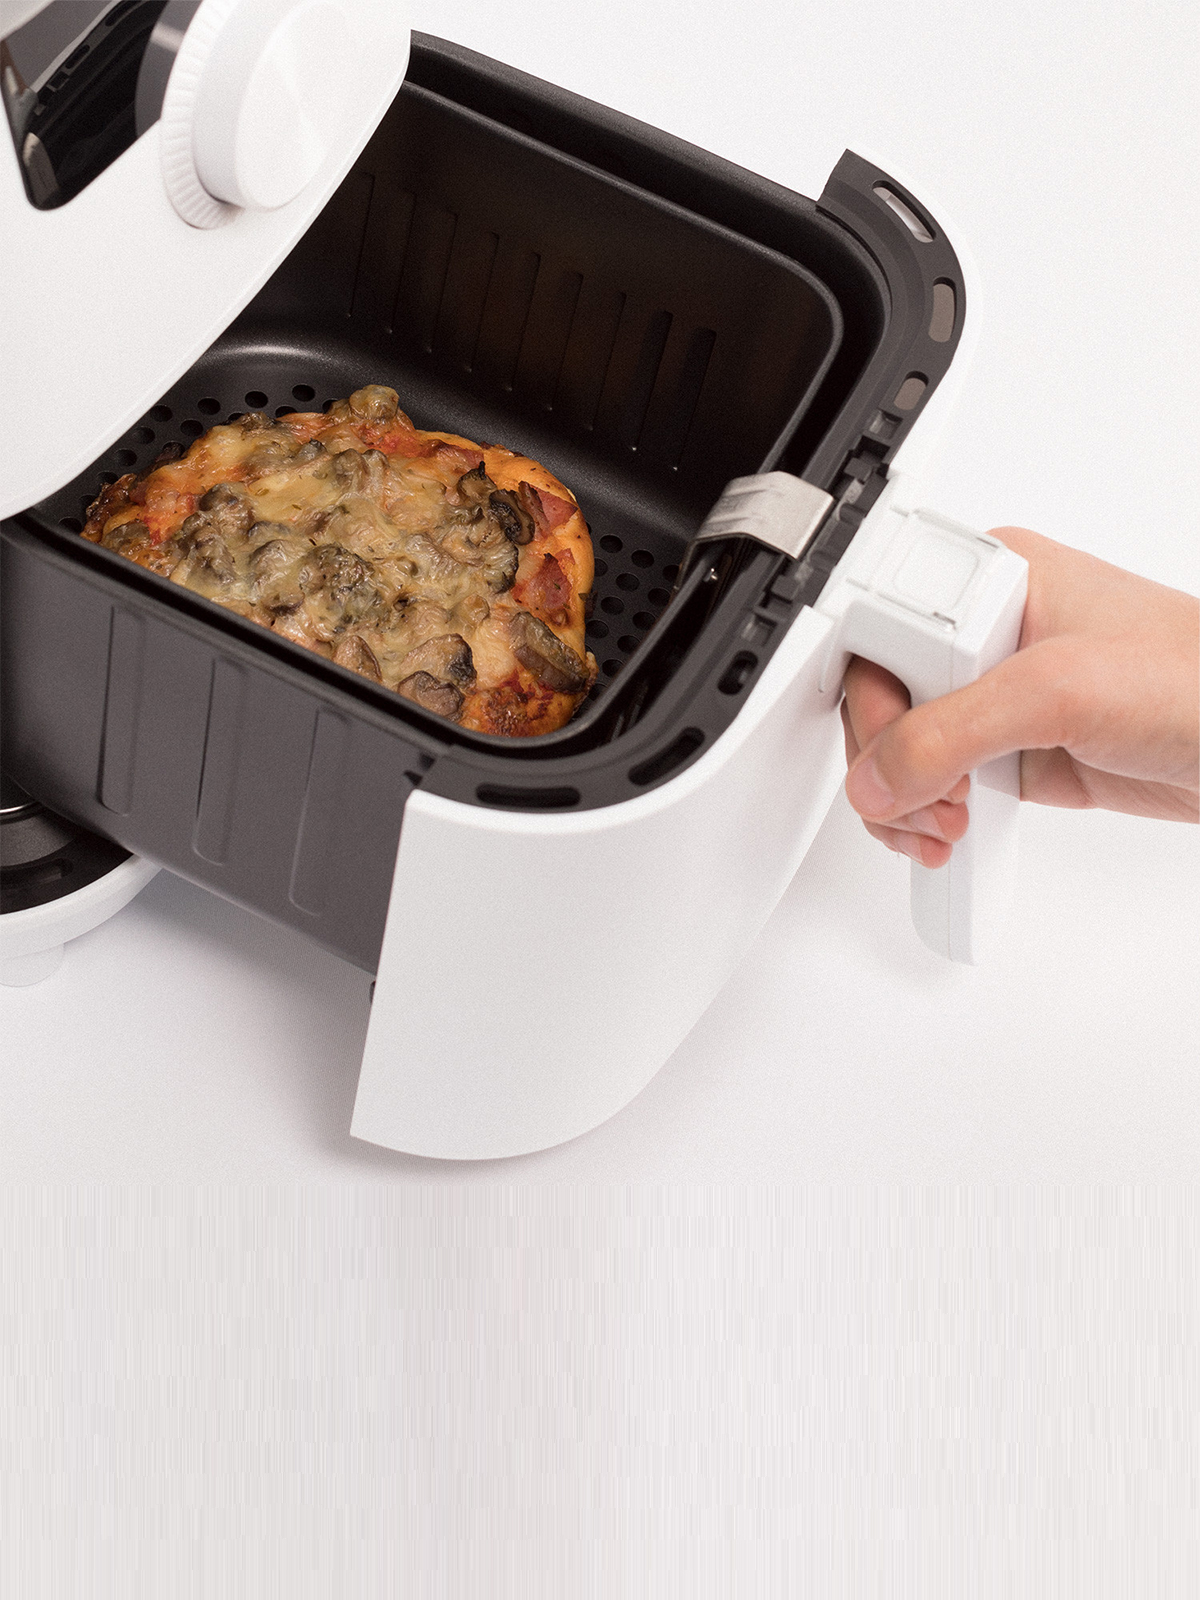 Pack Fryer Air Pro Compact 3.5 L + Set De Utensilios De Cocina con Ofertas  en Carrefour